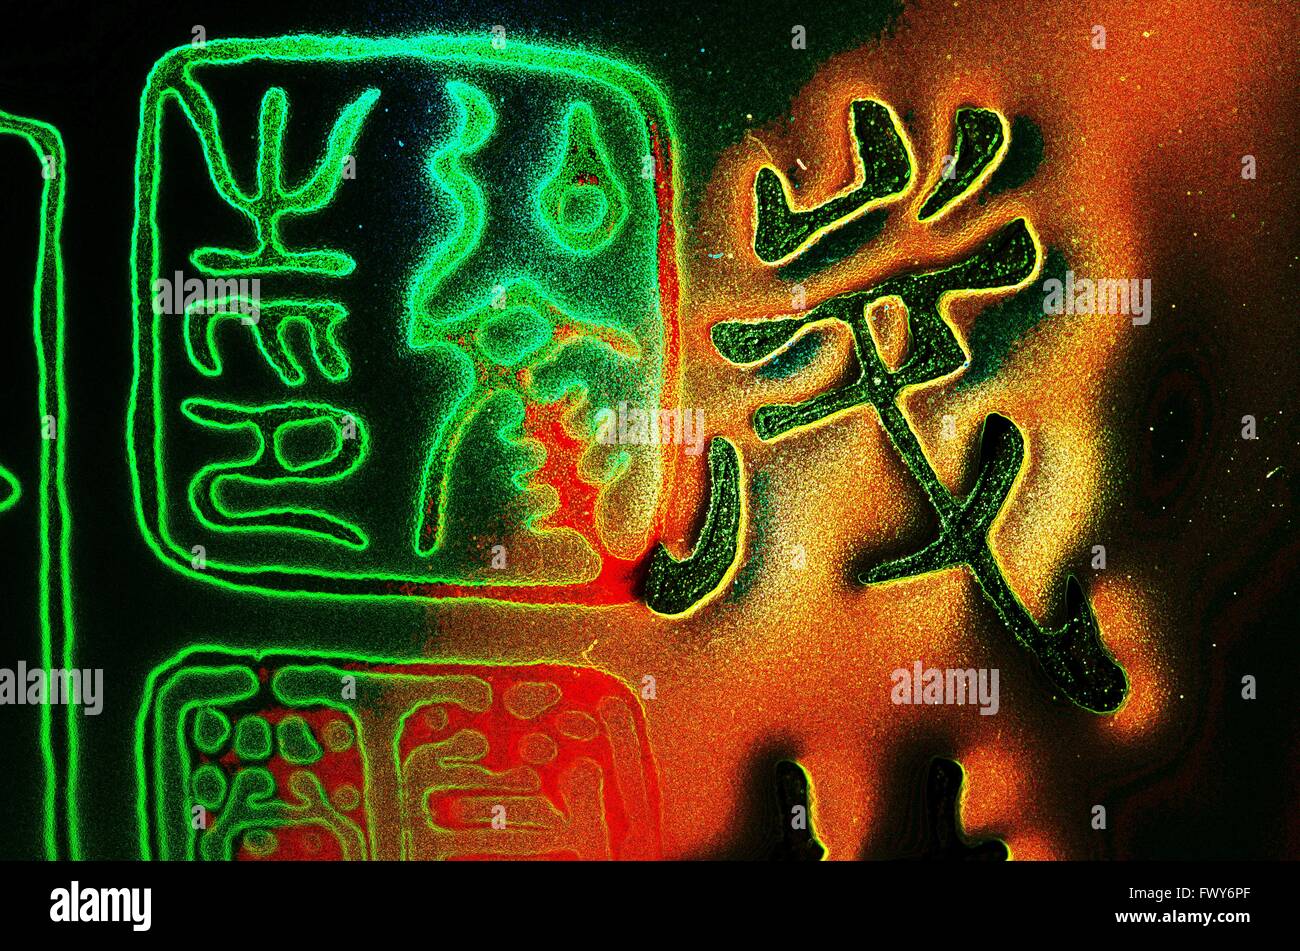 Rouge Vert couleur des symboles chinois, fond noir Banque D'Images